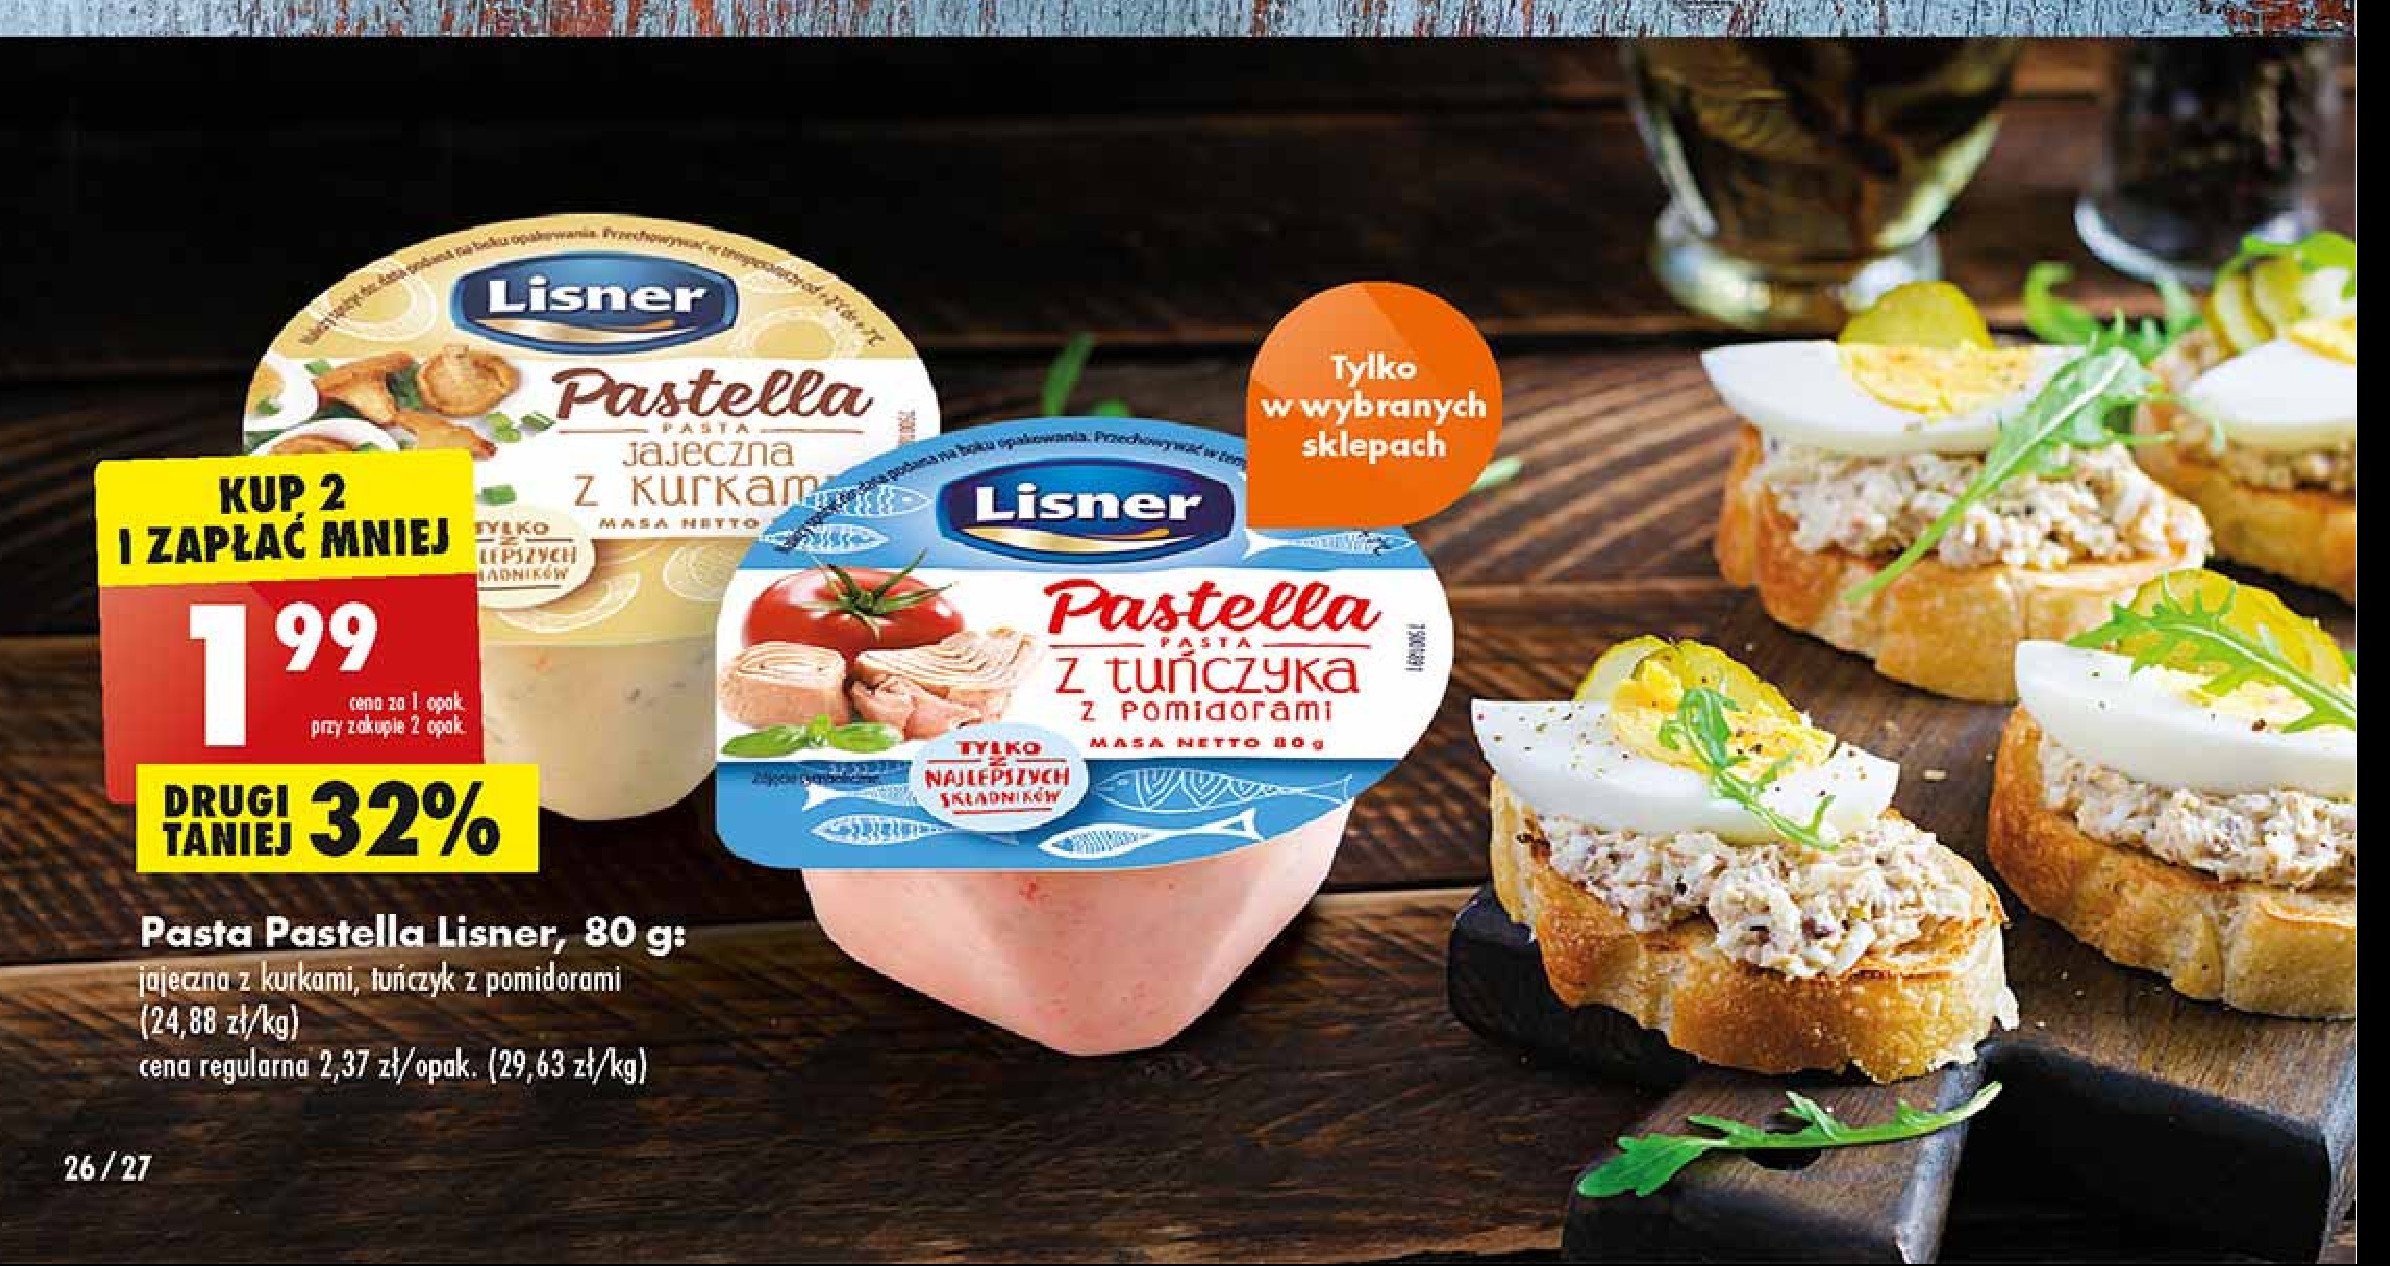 Pasta z tuńczyka z pomidorami Lisner pastella promocja